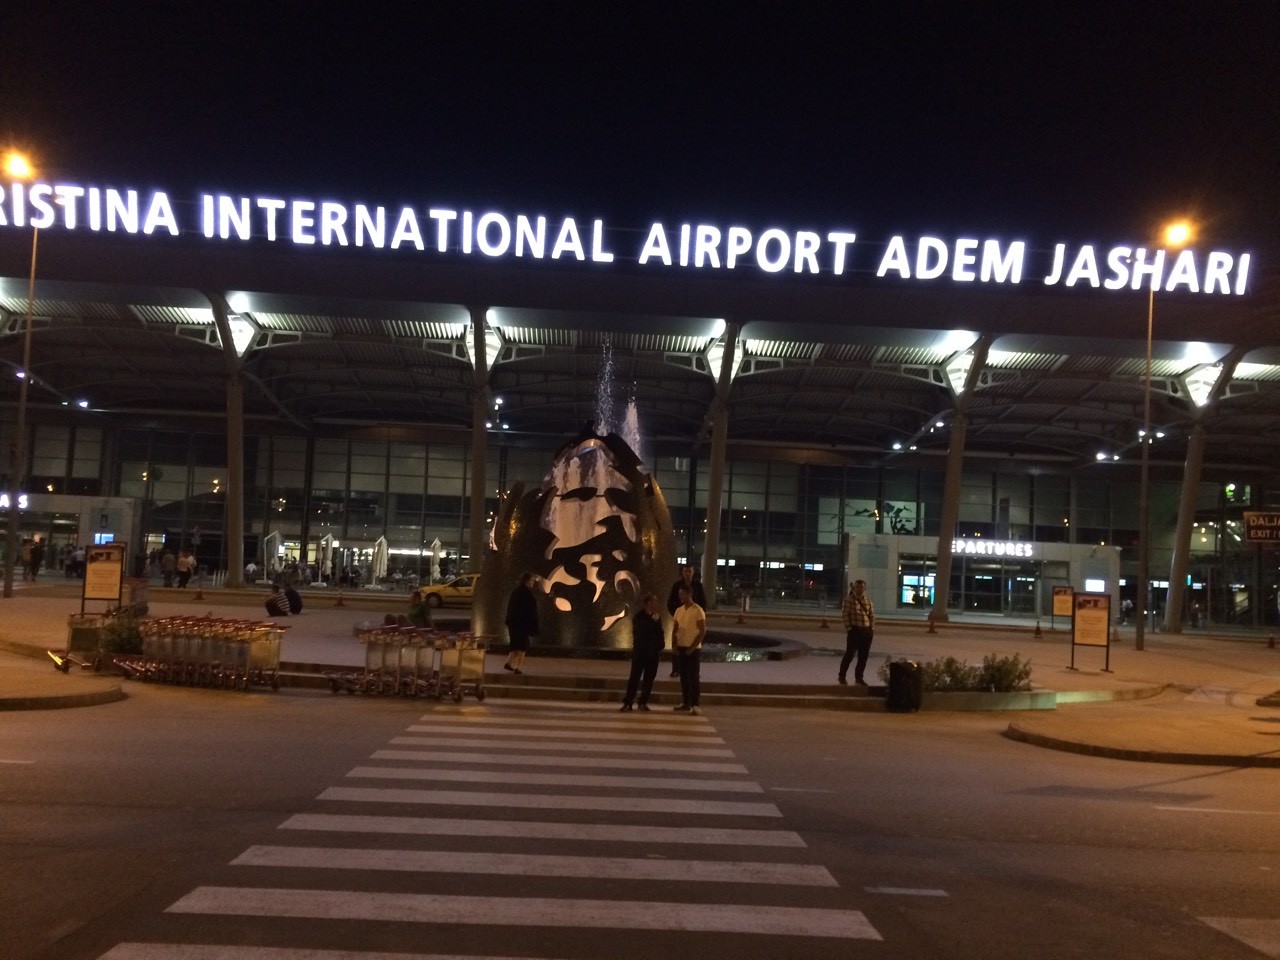 Aeroporti i Prishtinës arrinë rekord të ri, 242 mijë udhëtarë gjatë gushtit  